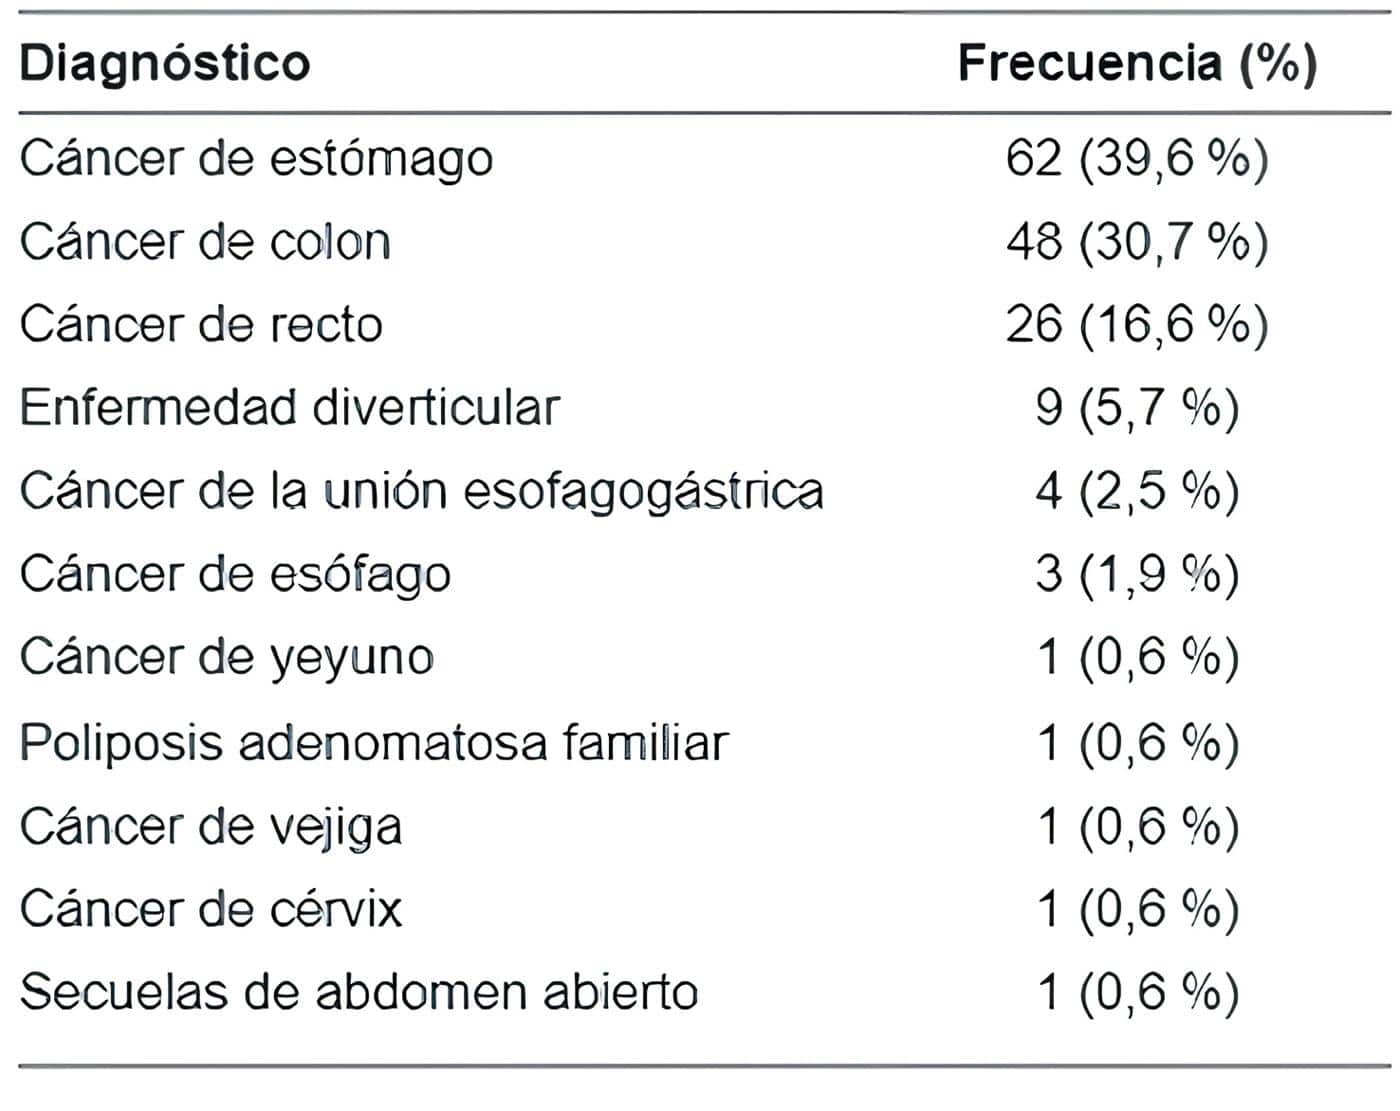 Fugas Anastomóticas - Diagnósticos en los pacientes incluidos en el estudio 